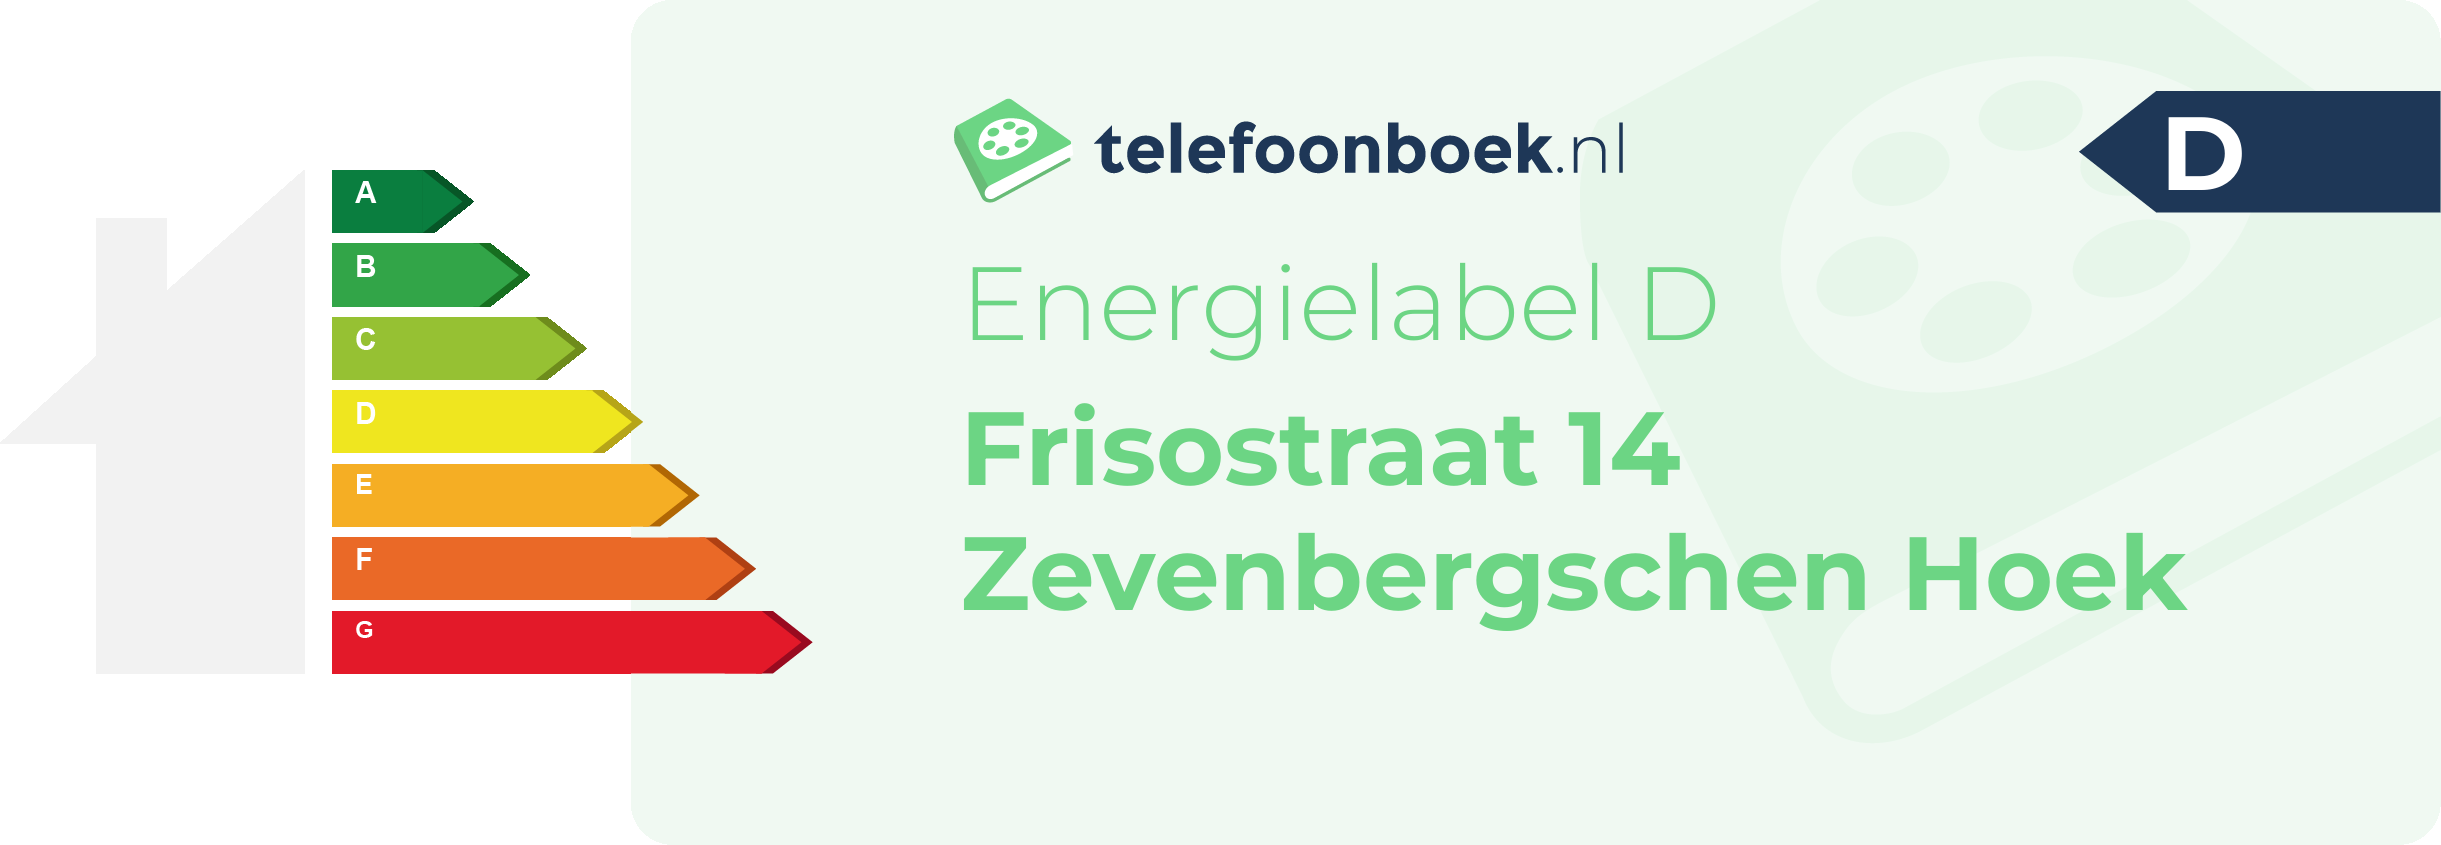 Energielabel Frisostraat 14 Zevenbergschen Hoek